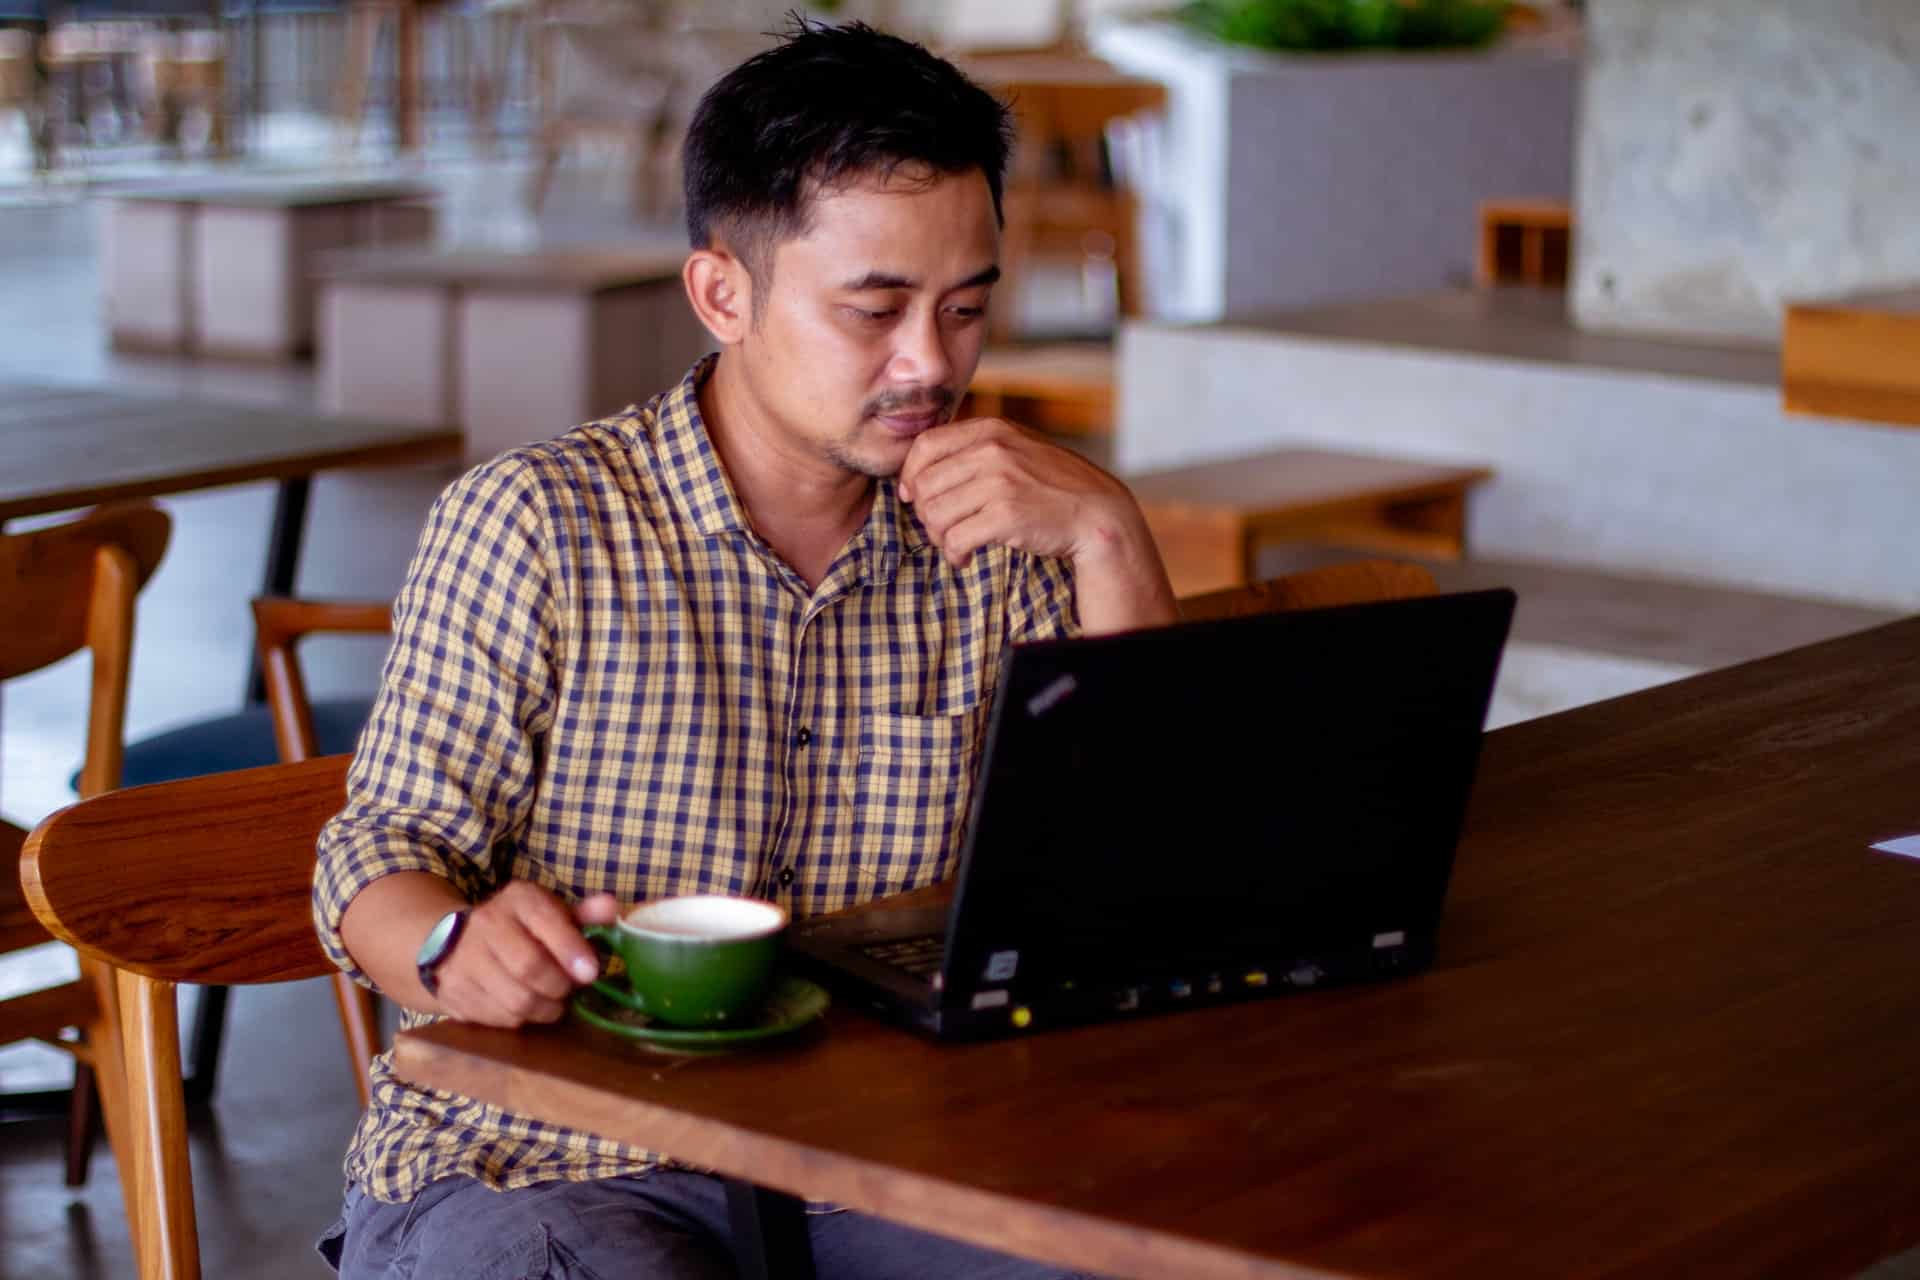 un homme devant un ordinateur avec une tasse verte posé à côté